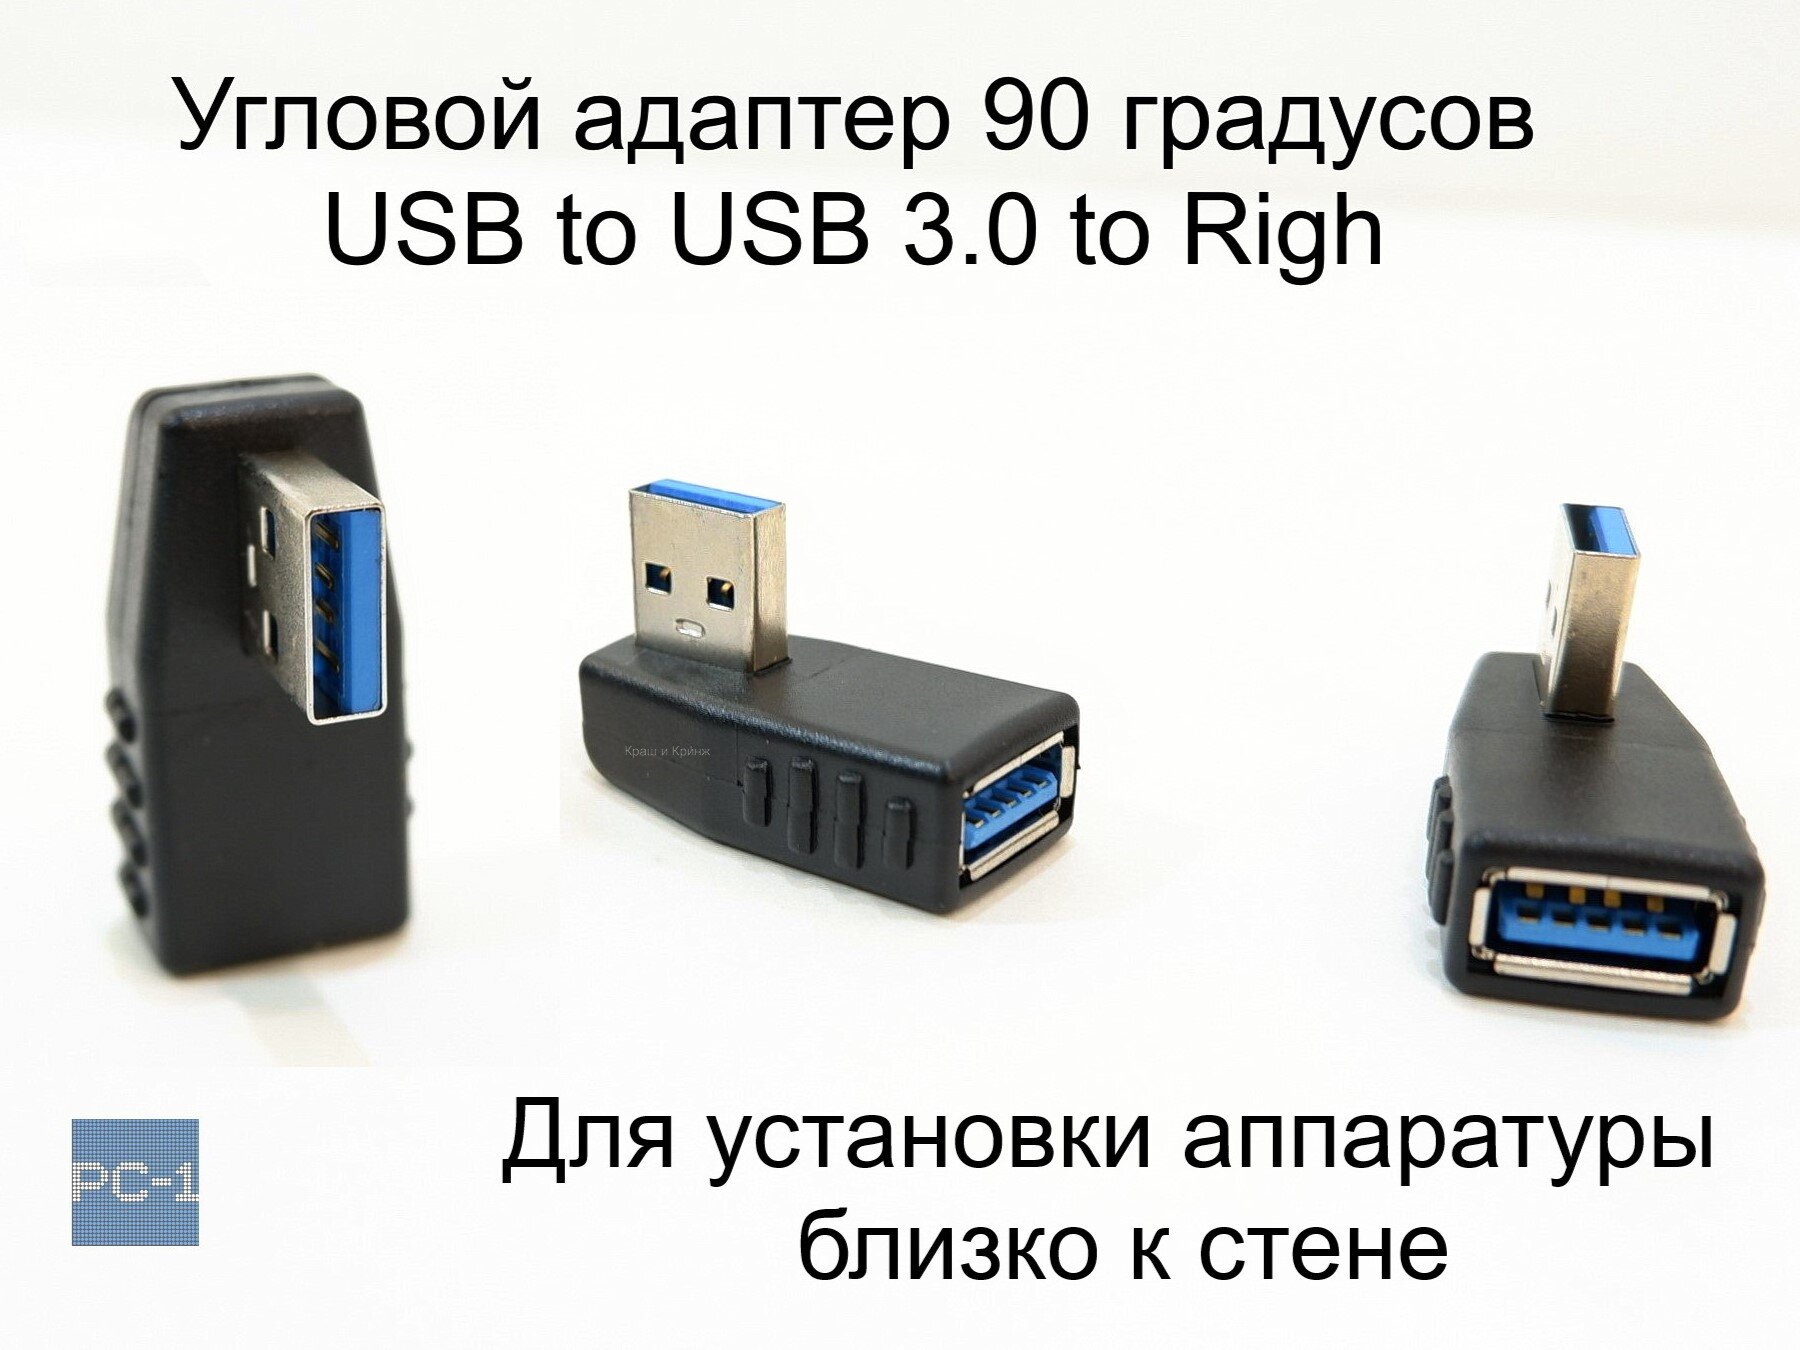 Угловой адаптер 90 градусов USB to USB 3.0 Right. Правый. Male To Female